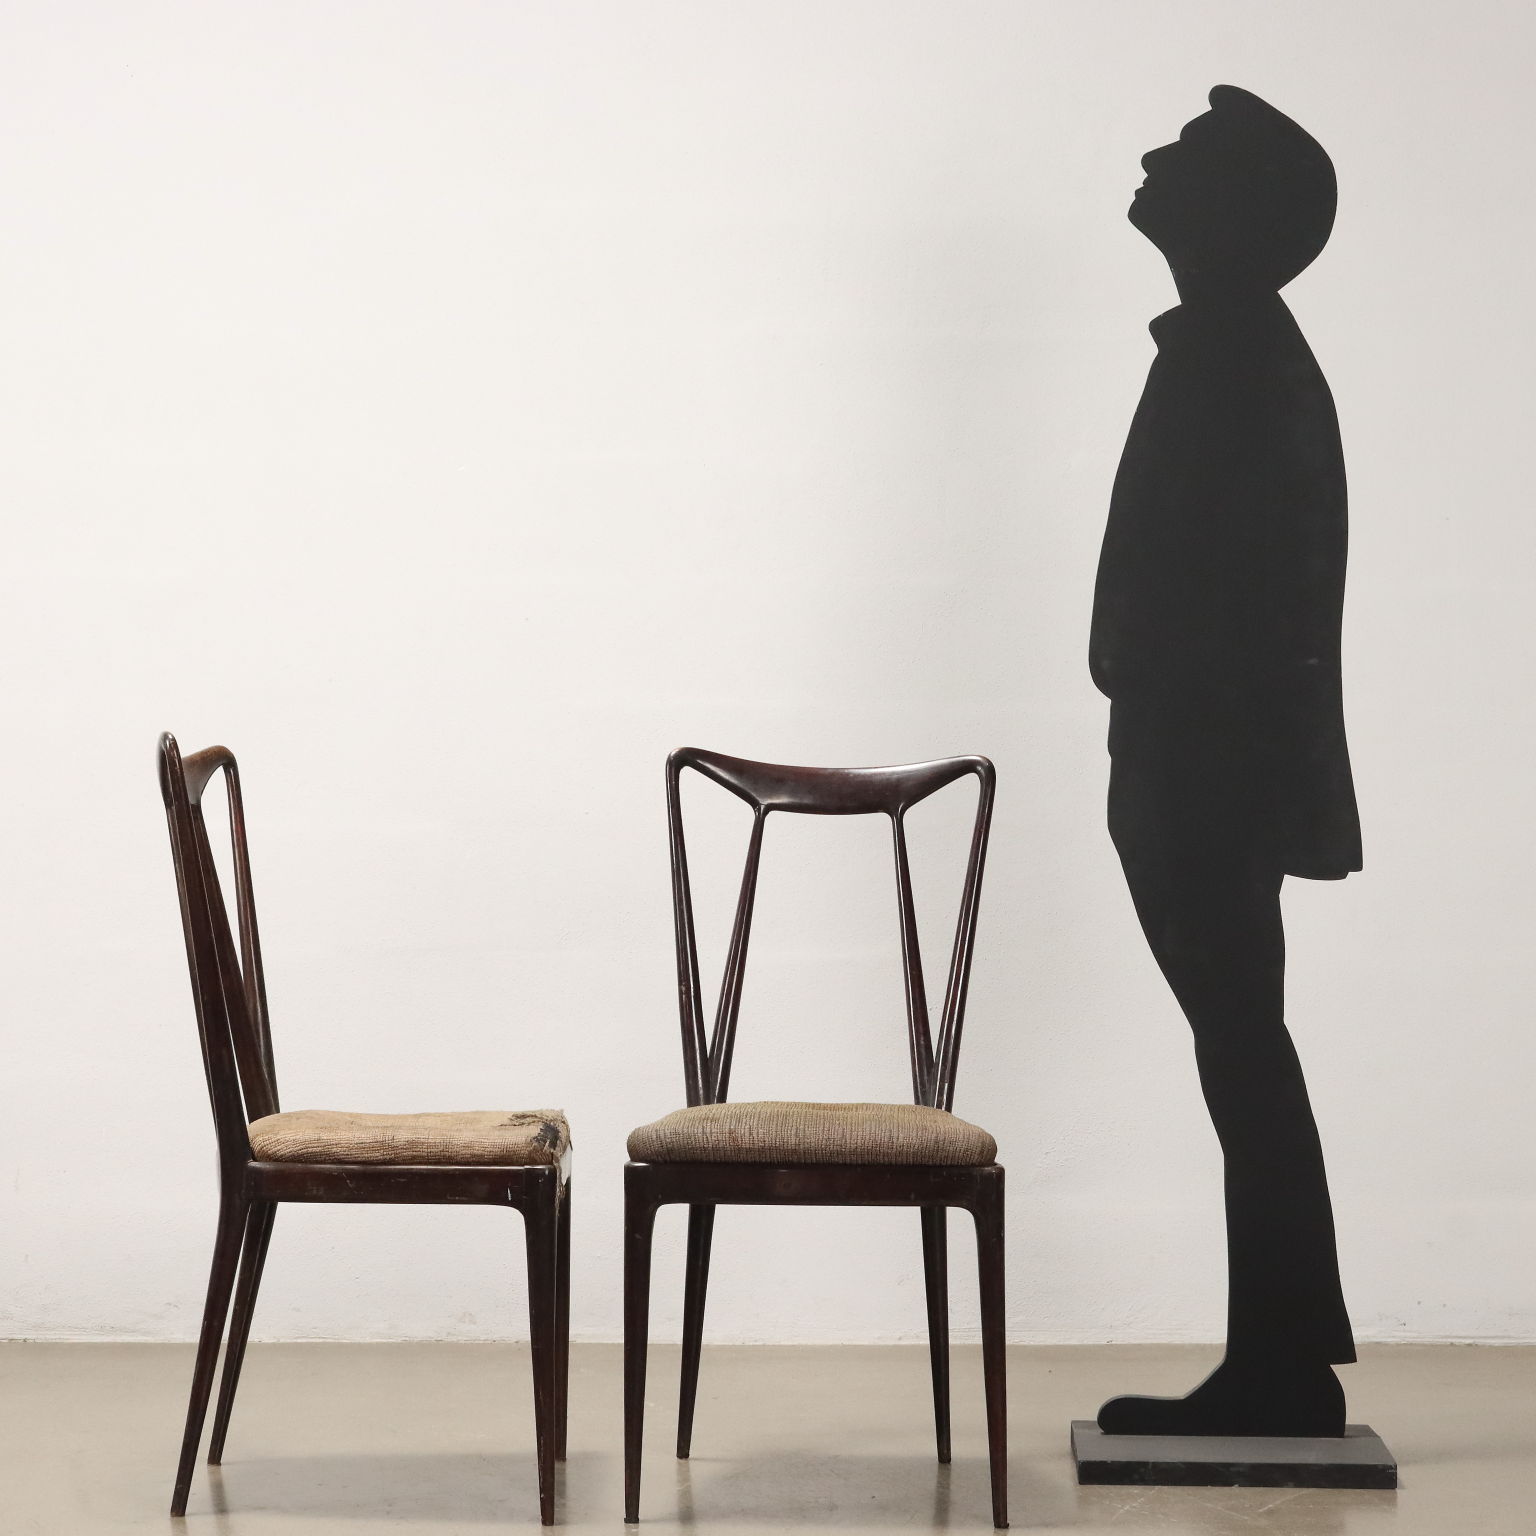 Paar Vintage Stühle aus Buchenholz Italien der 50er Jahre